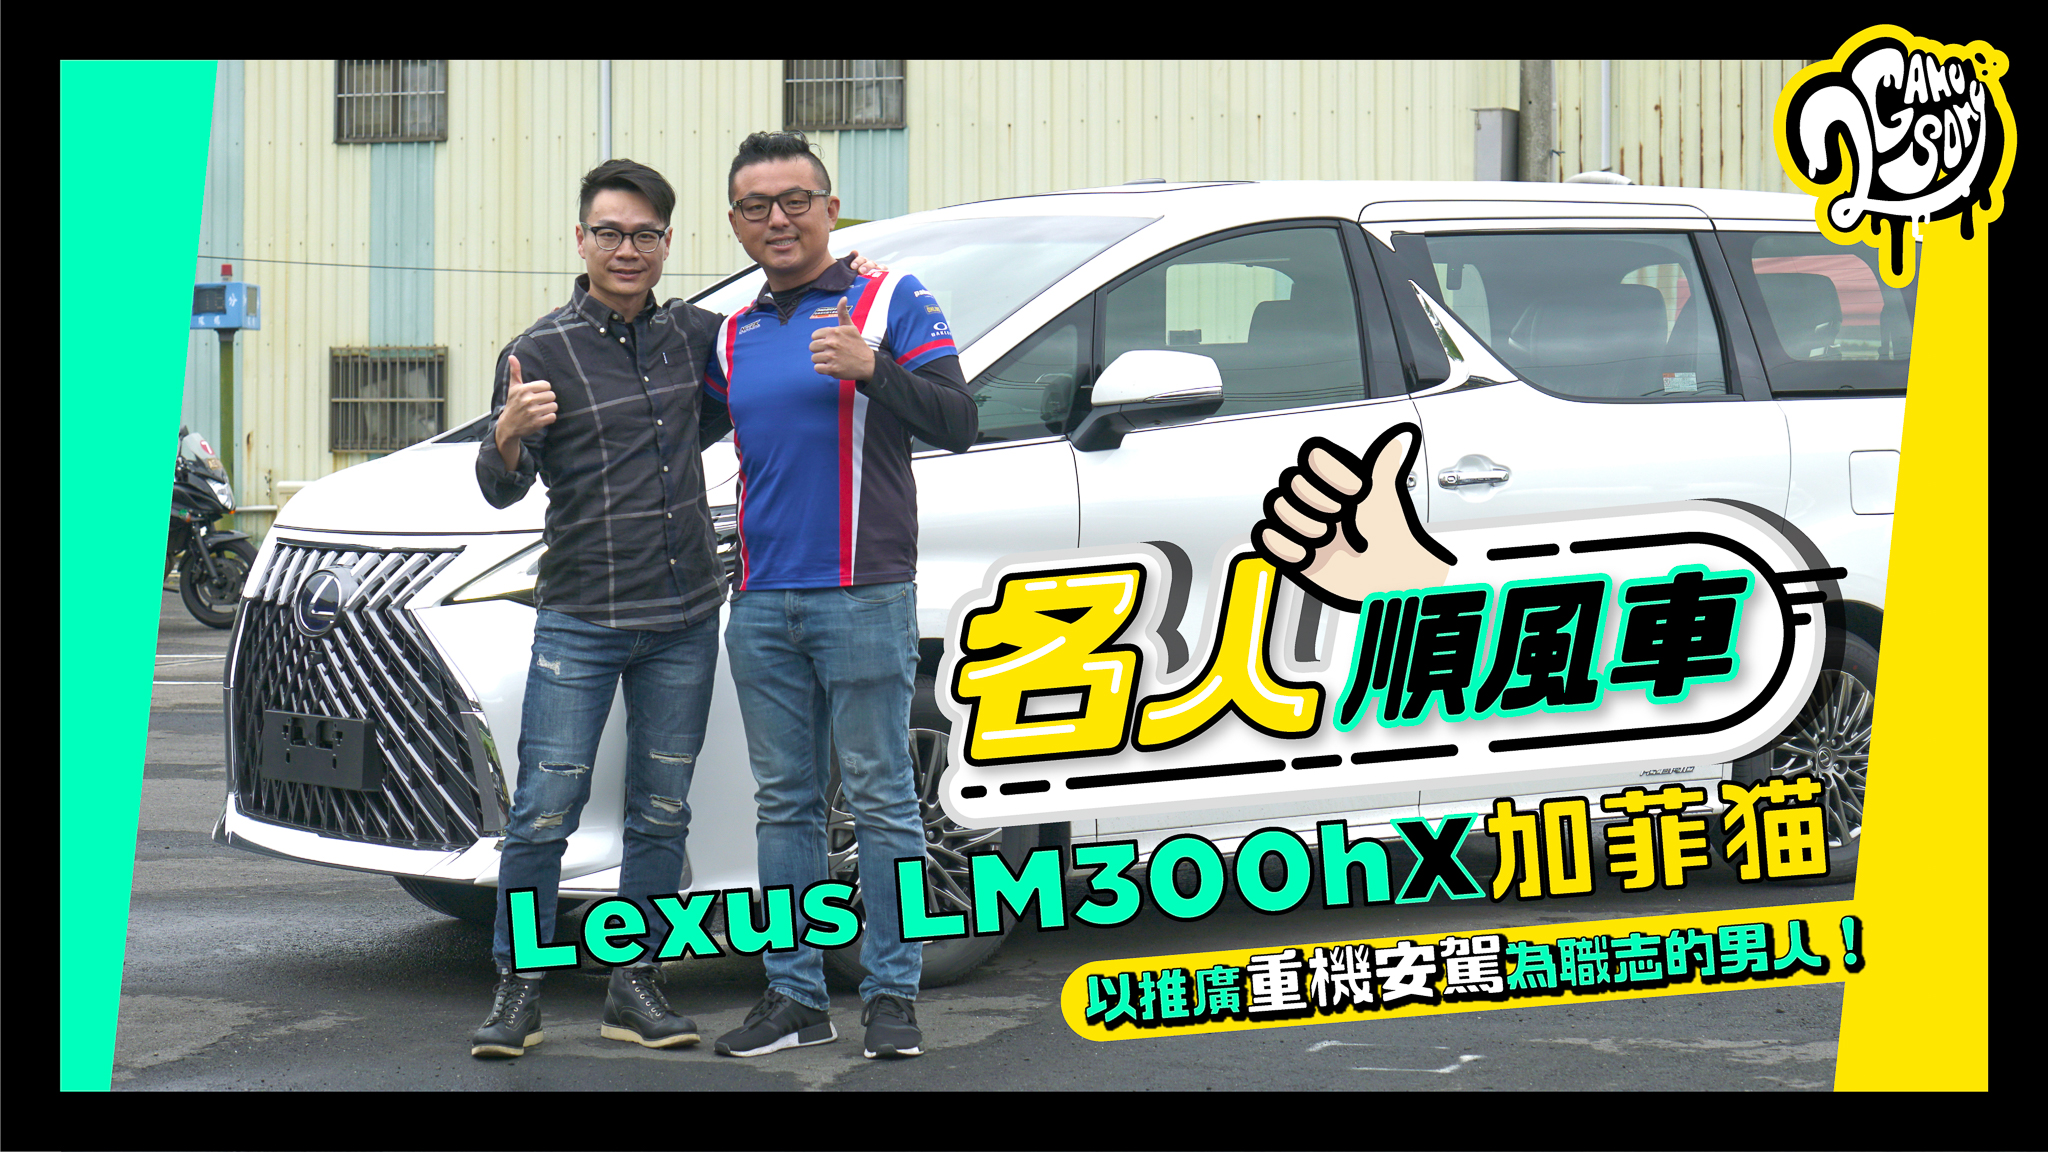 名人順風車 - Lexus LM300h X 加菲貓 / 以推廣重機安駕為職志的男人！